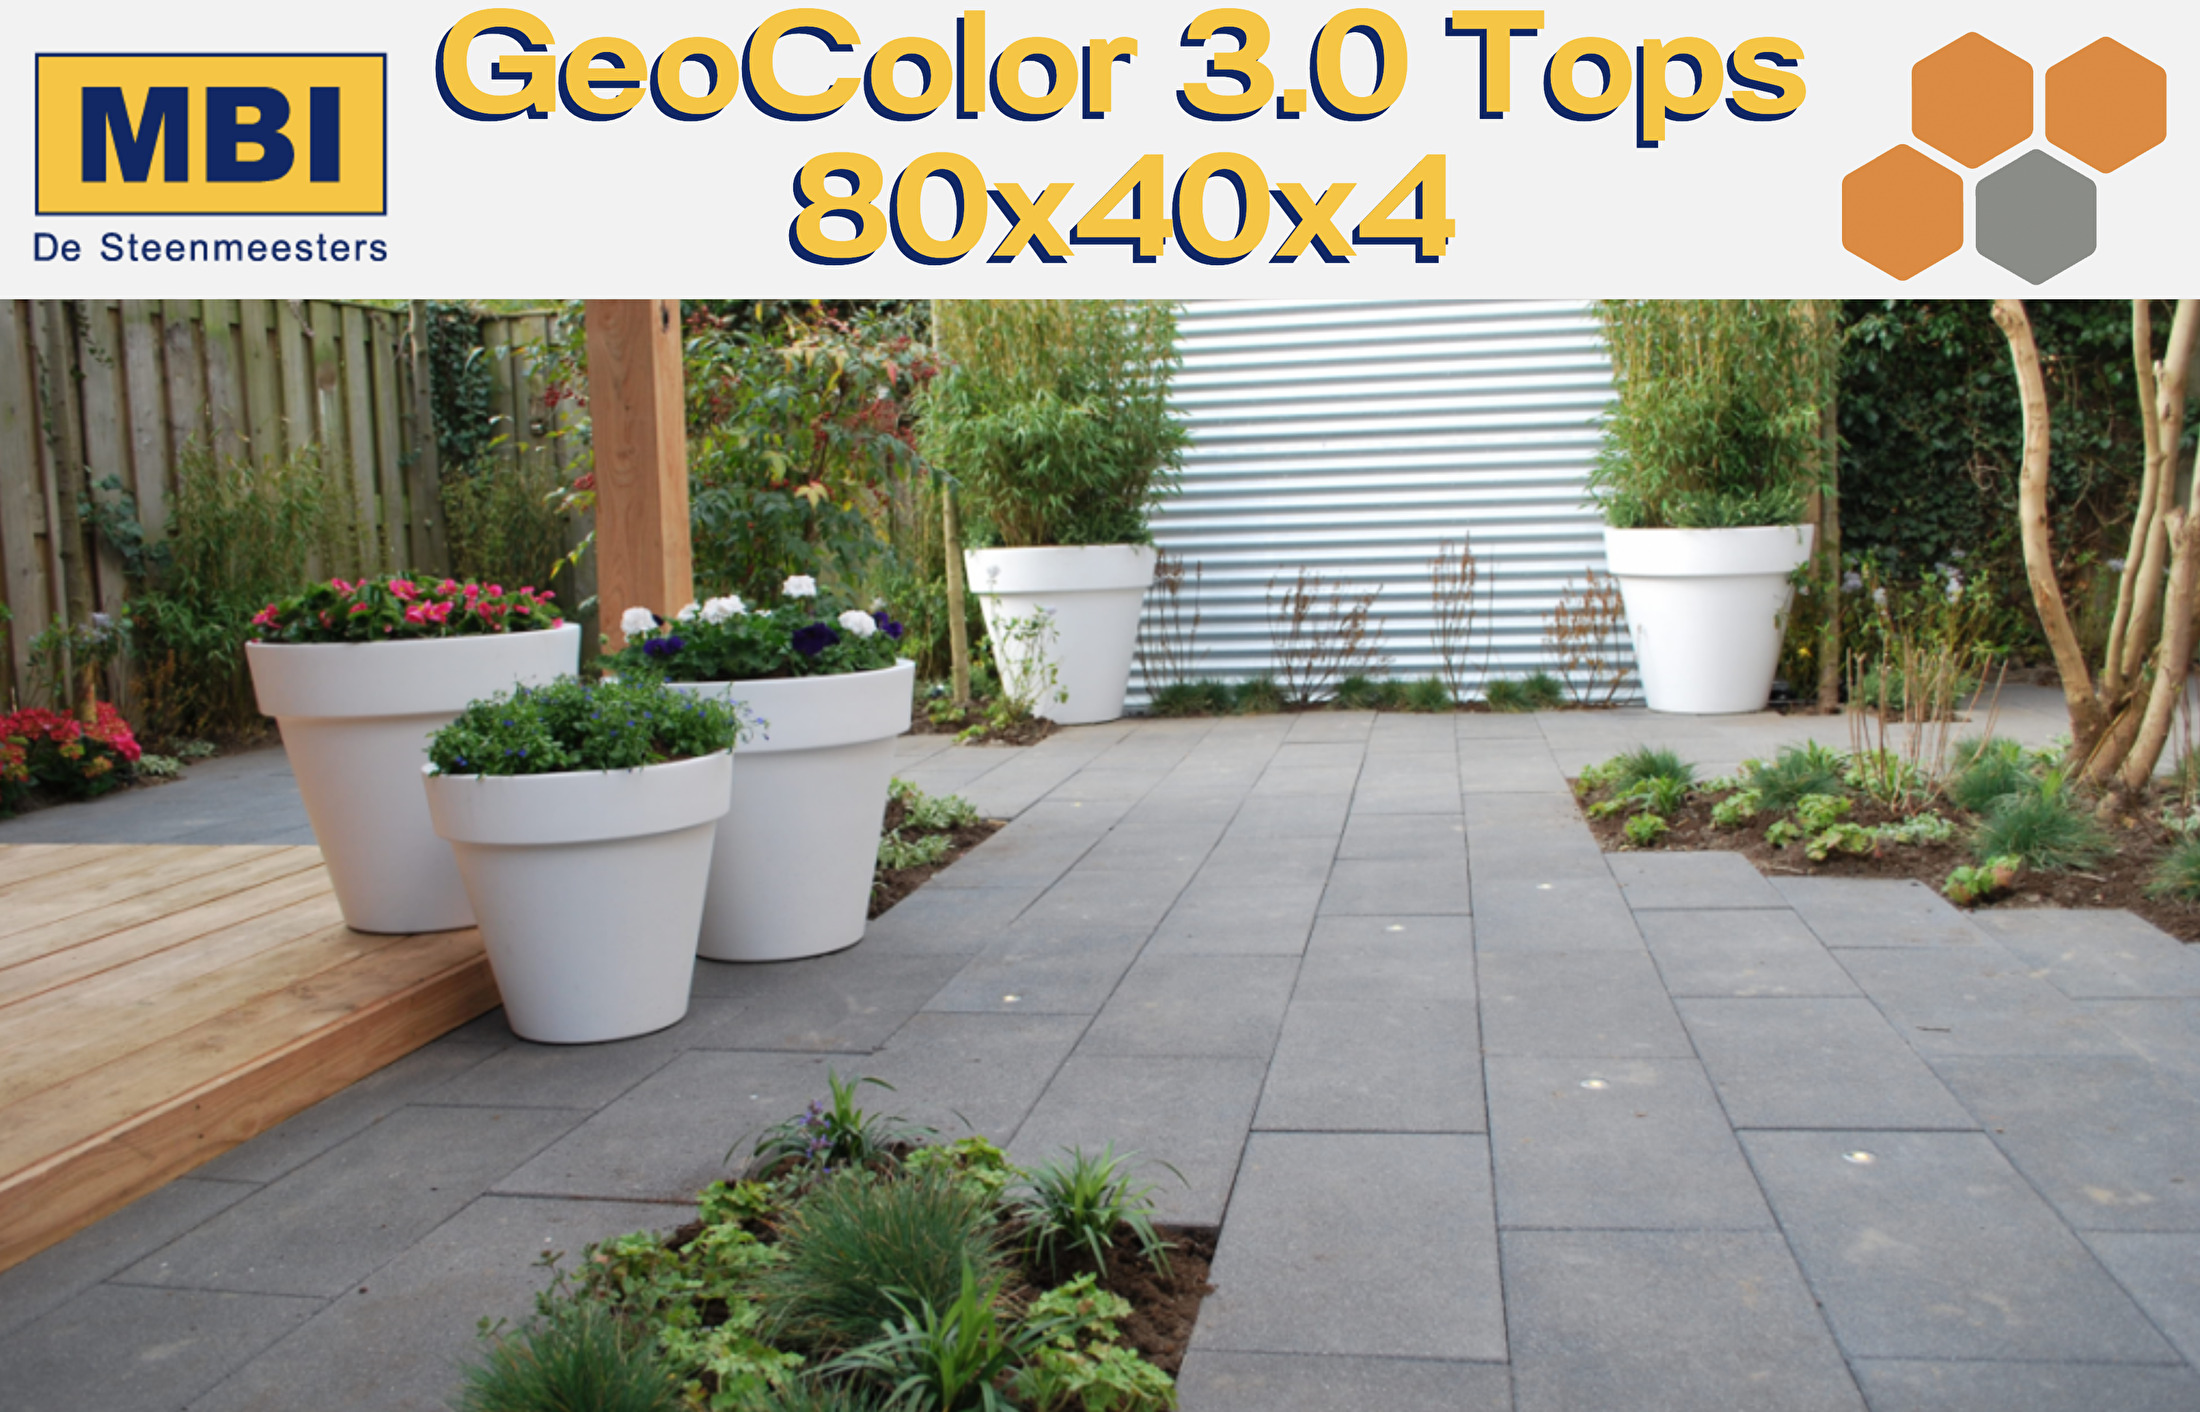 GeoColor 3.0 Tops 80x40x4